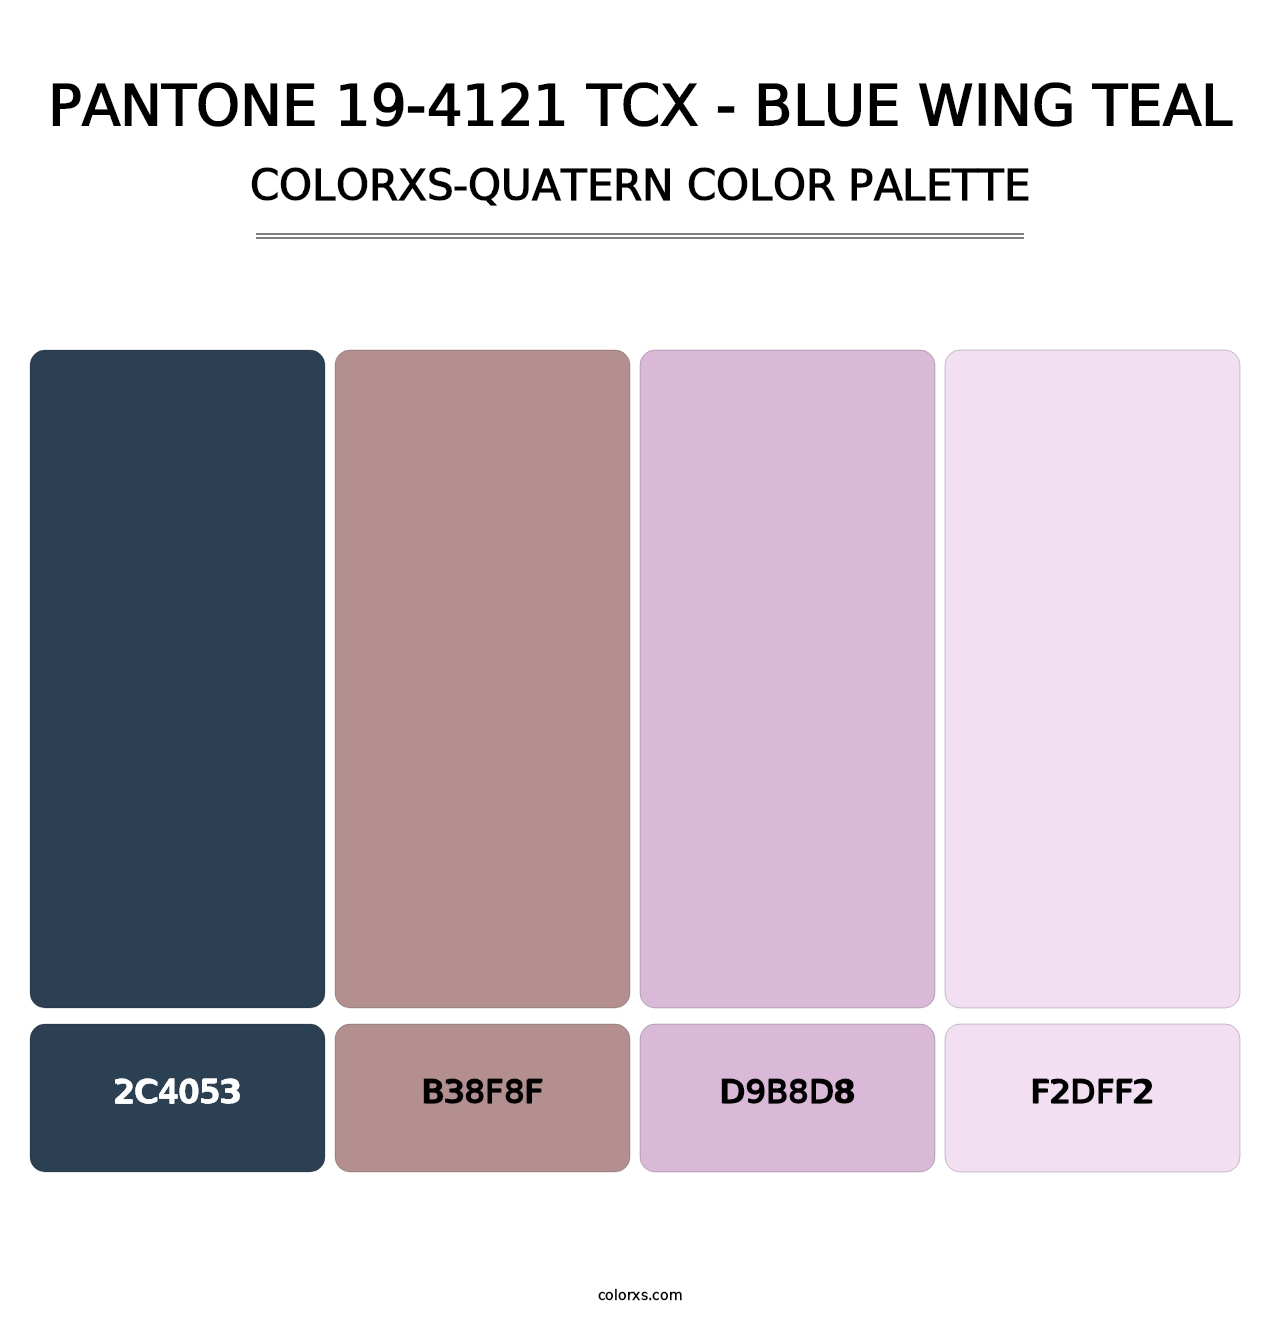 PANTONE 19-4121 TCX - Blue Wing Teal - Colorxs Quatern Palette